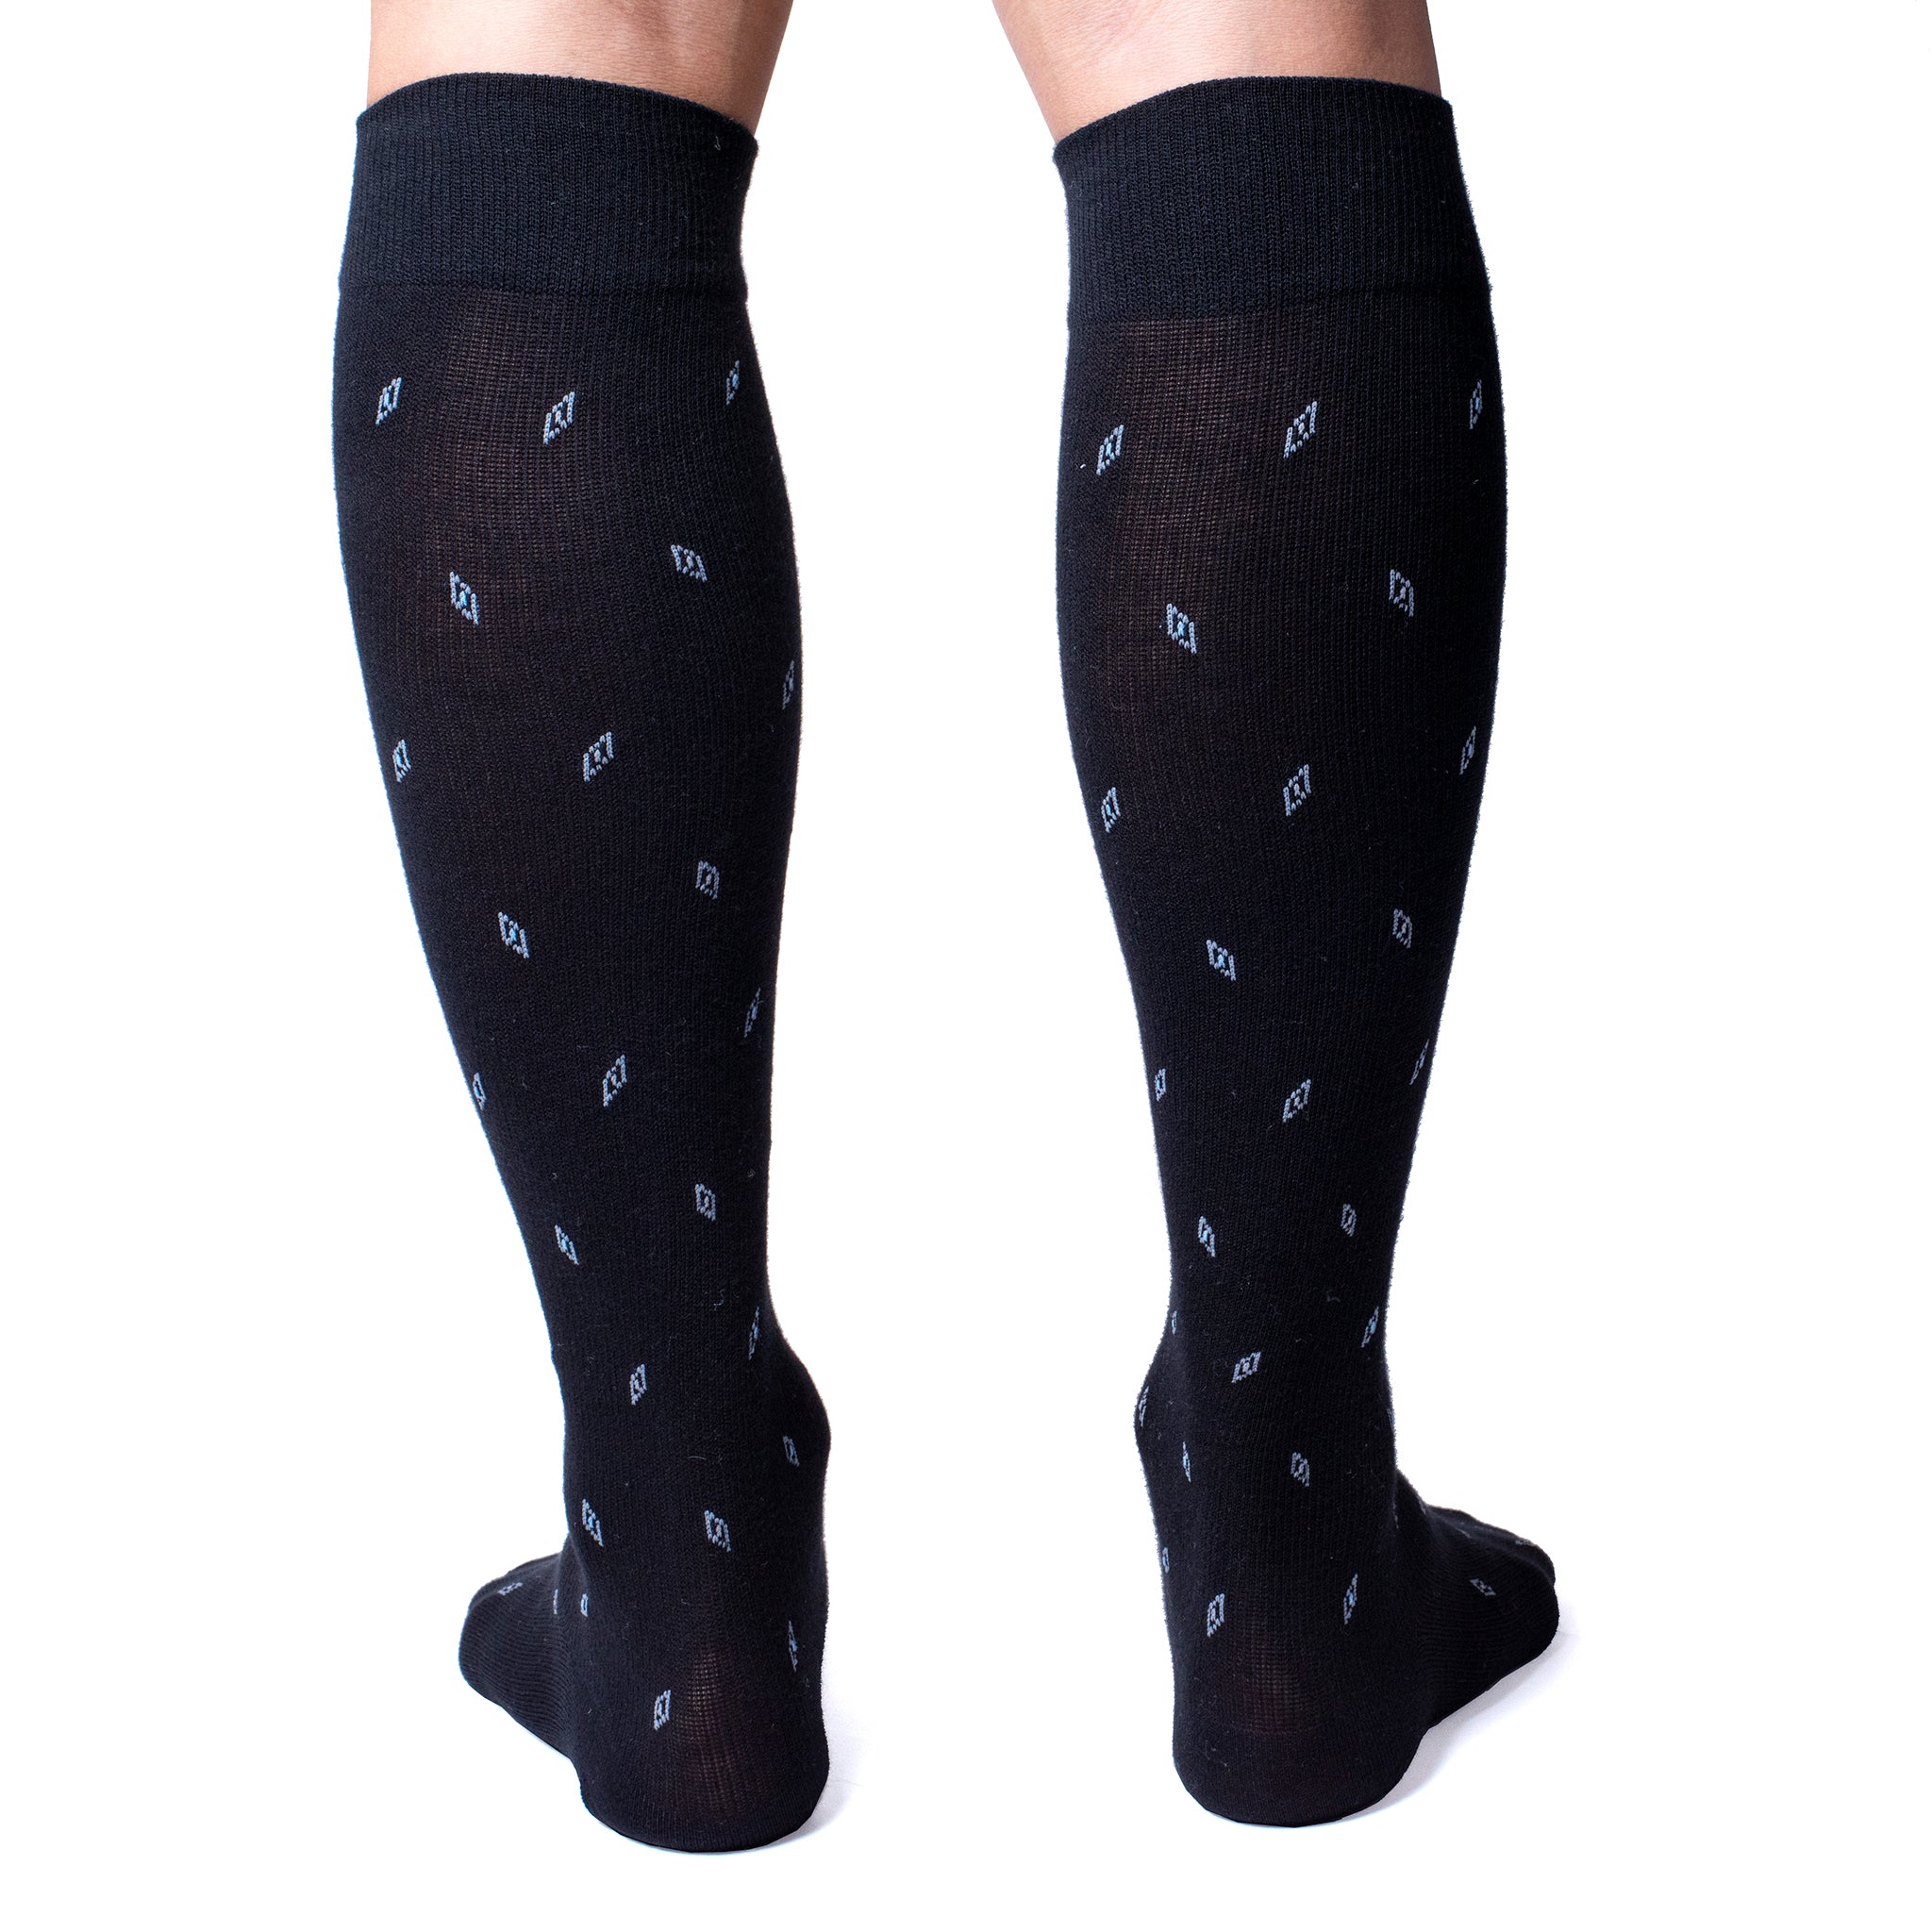 Gift Dash | Knee-High Compression Socks For Men